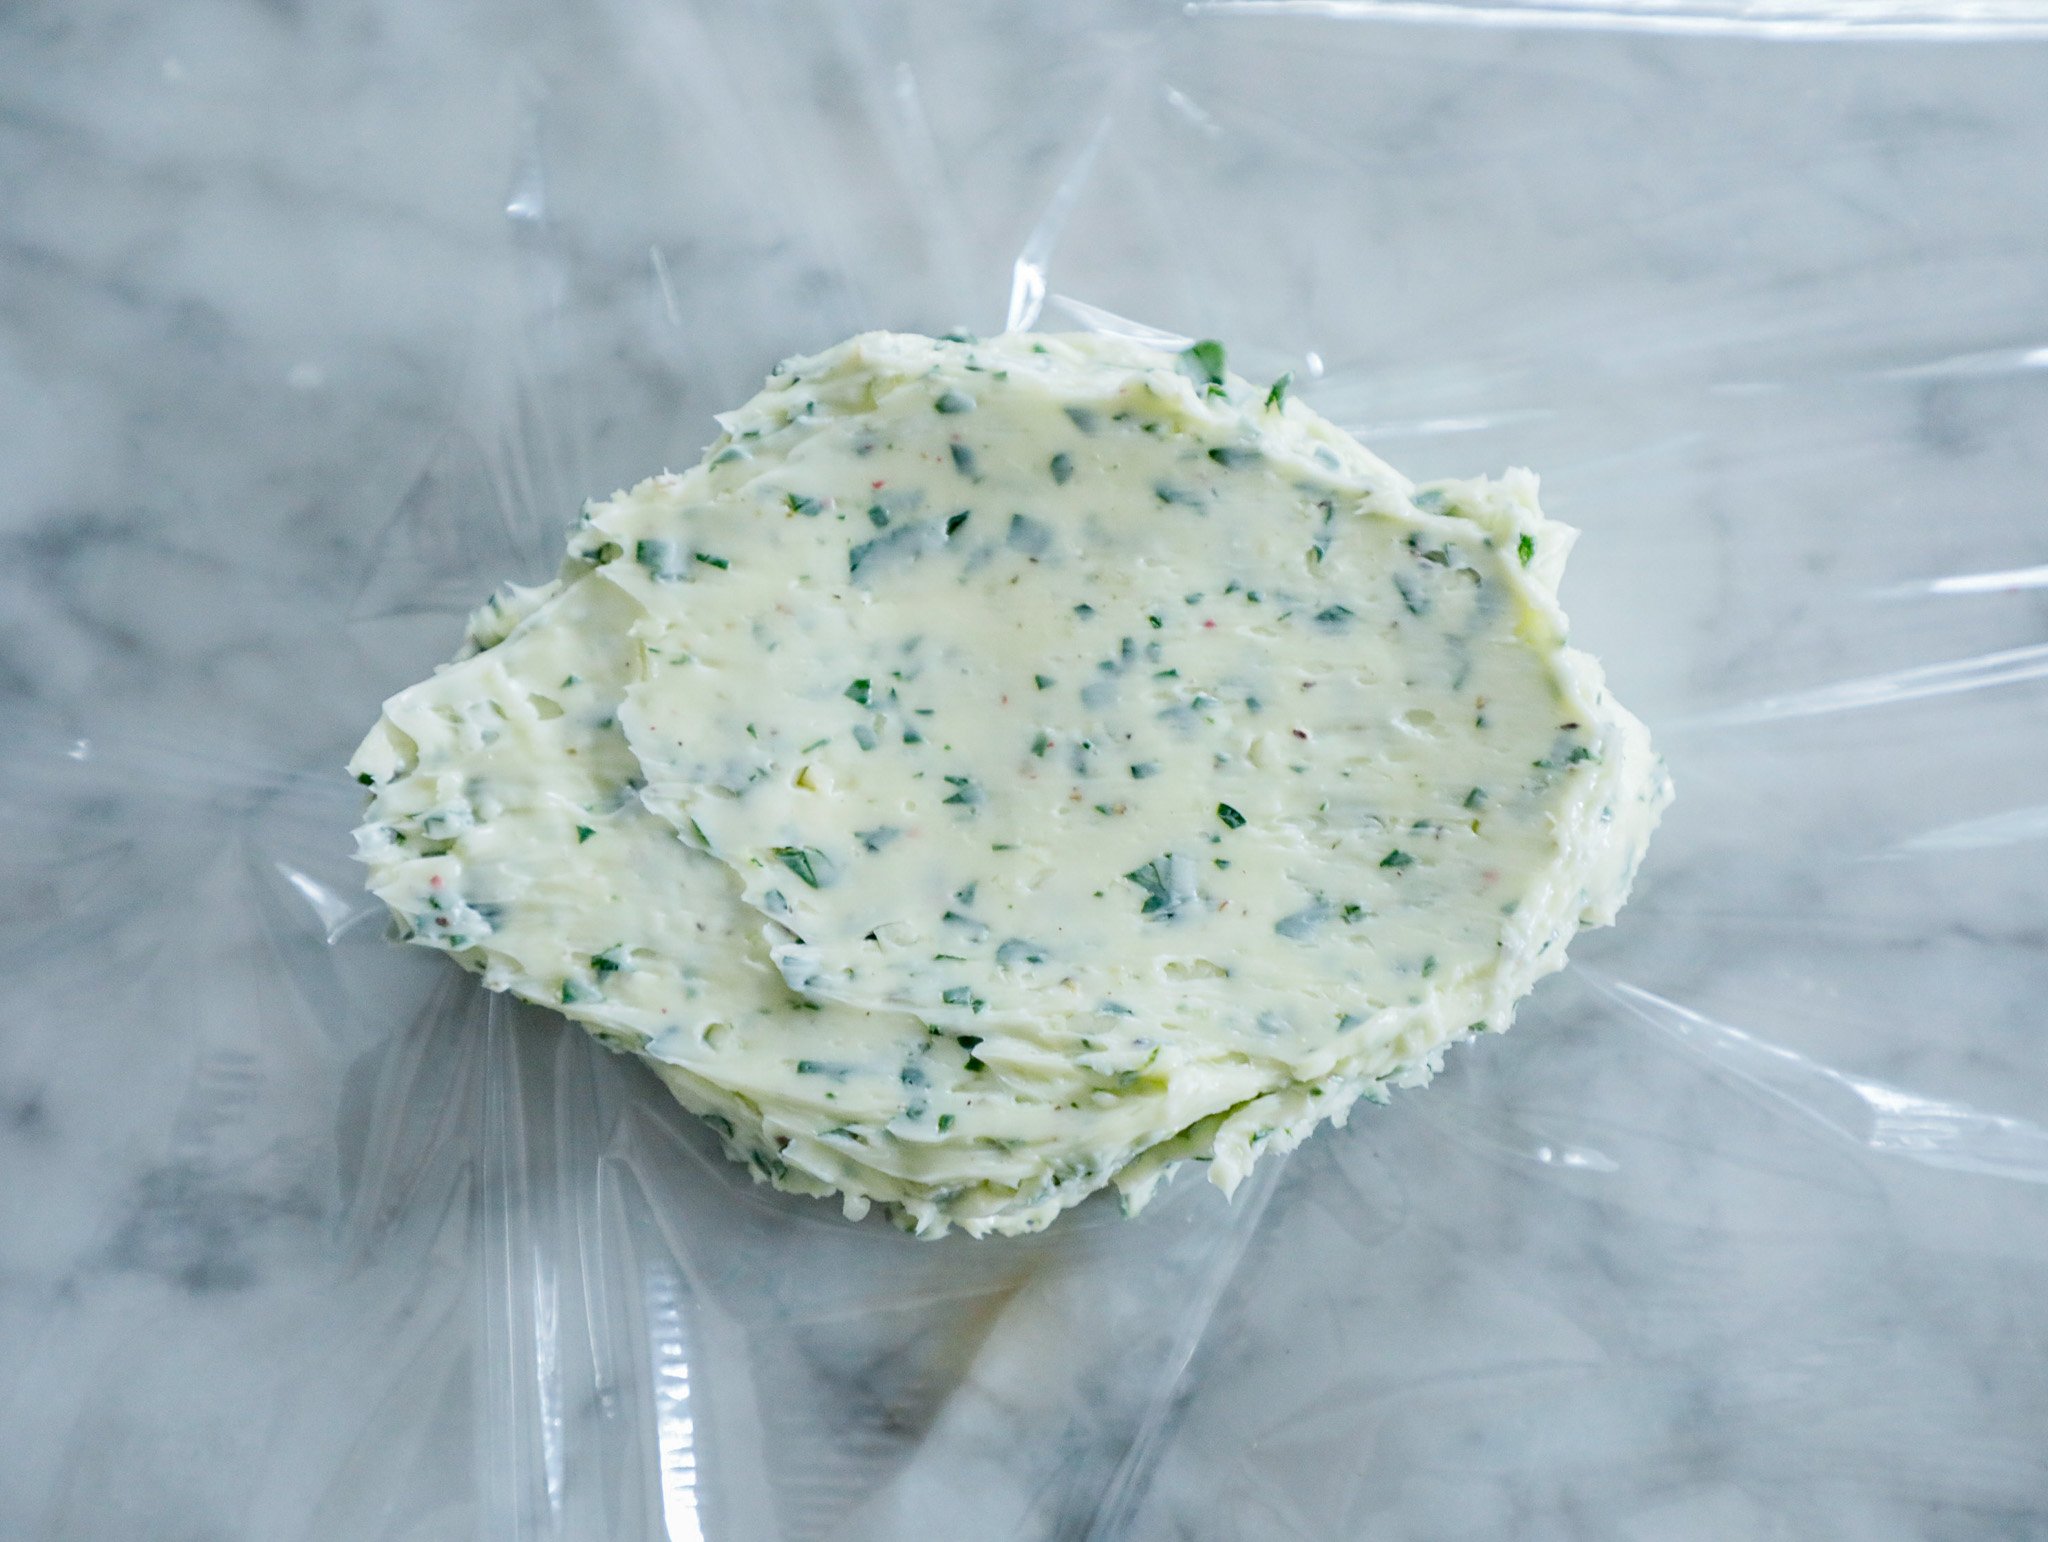 Maitre de butter spread onto plastic wrap